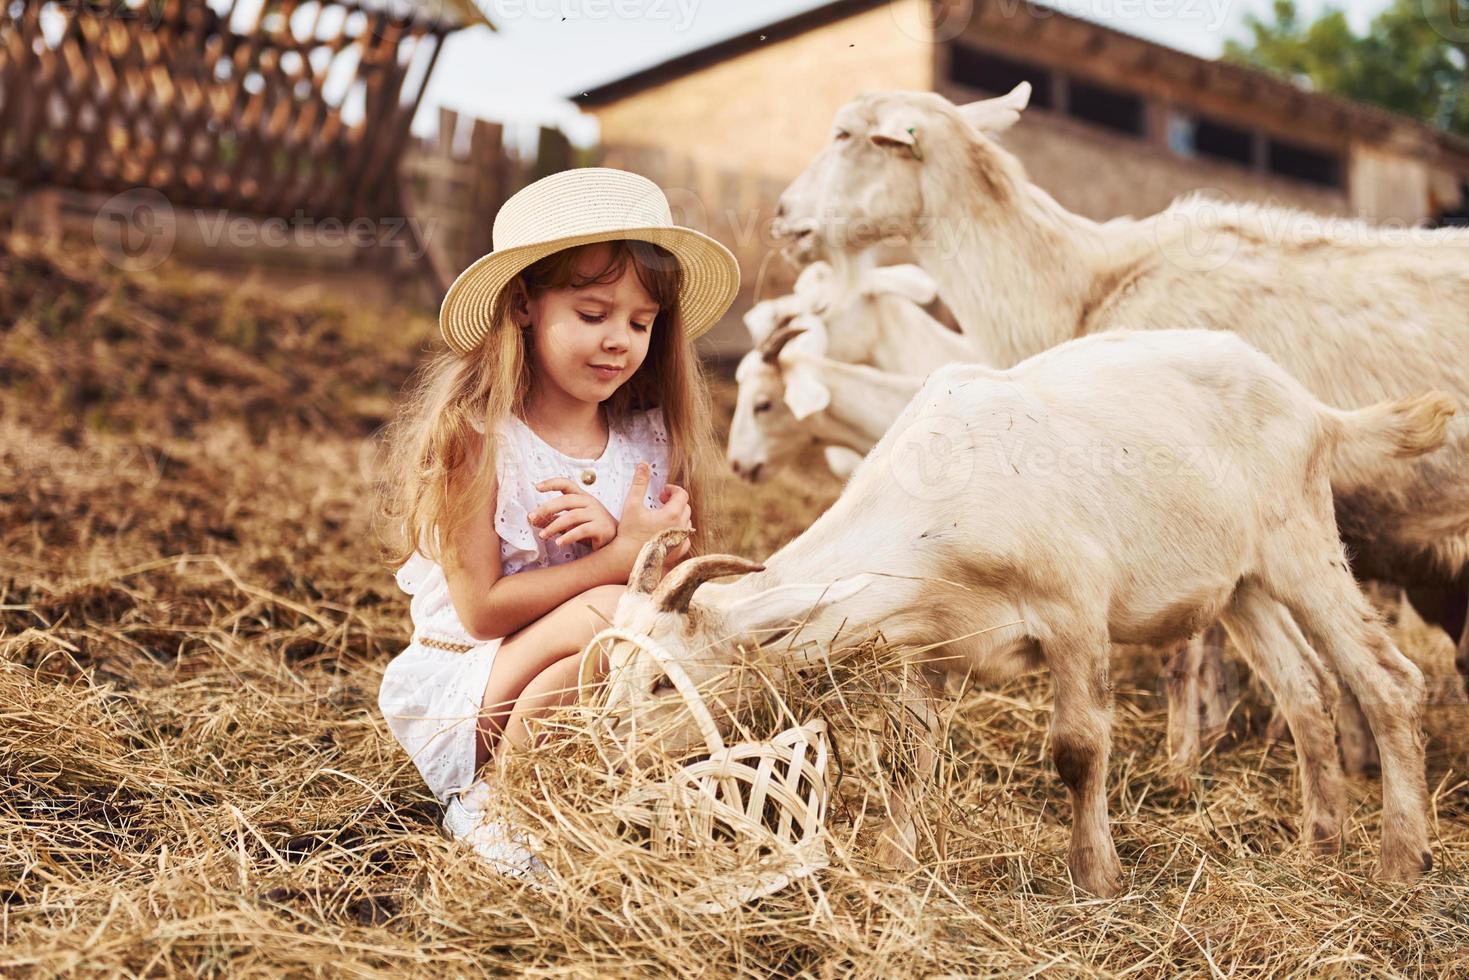 niñita vestida de blanco está en la granja en verano al aire libre con cabras foto